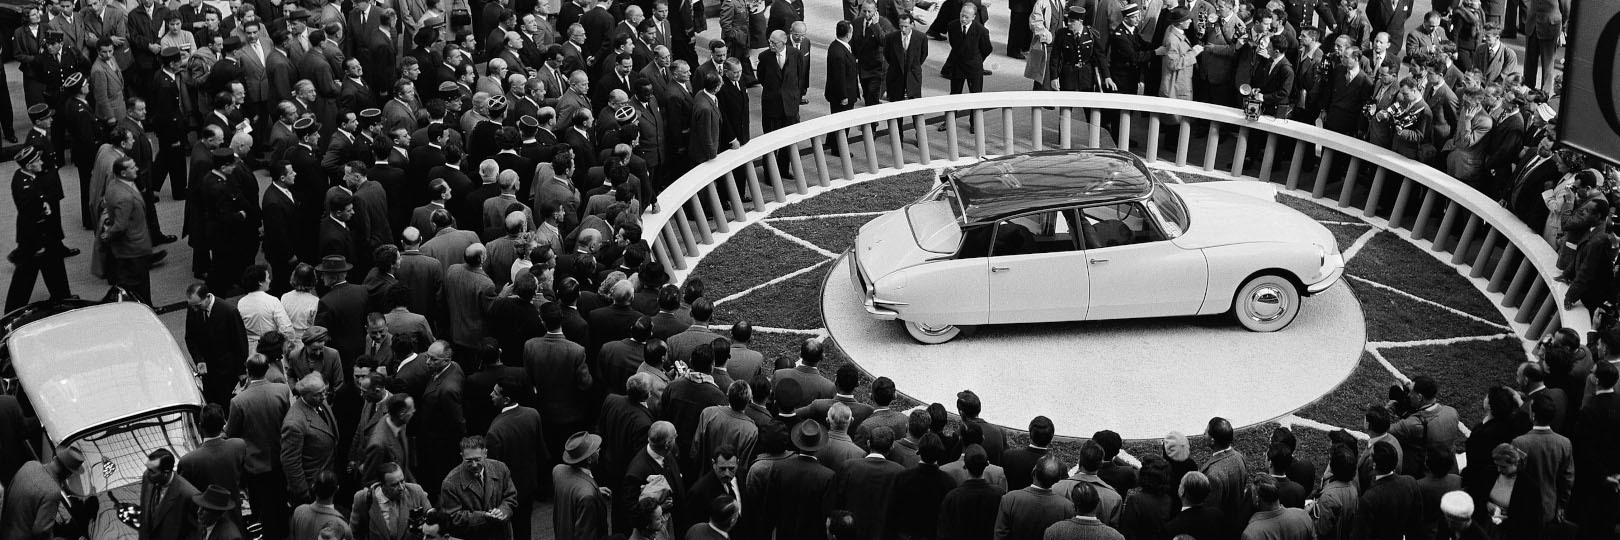 100 años de historia de Citroën (III)